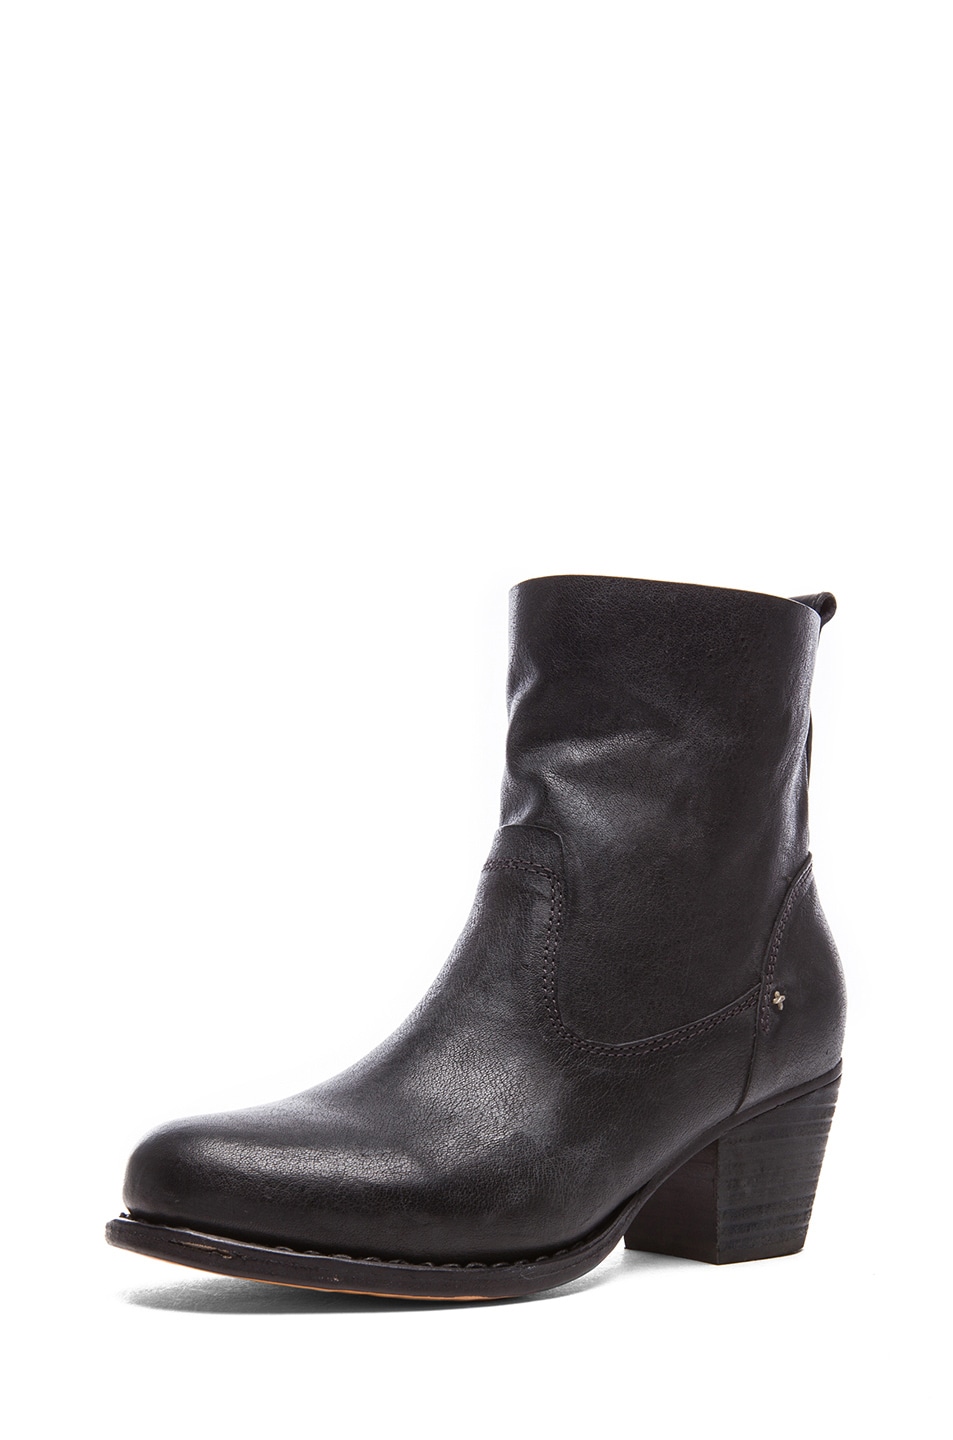 Rag & Bone Mercer Calfskin Leather Boots II in Black | FWRD